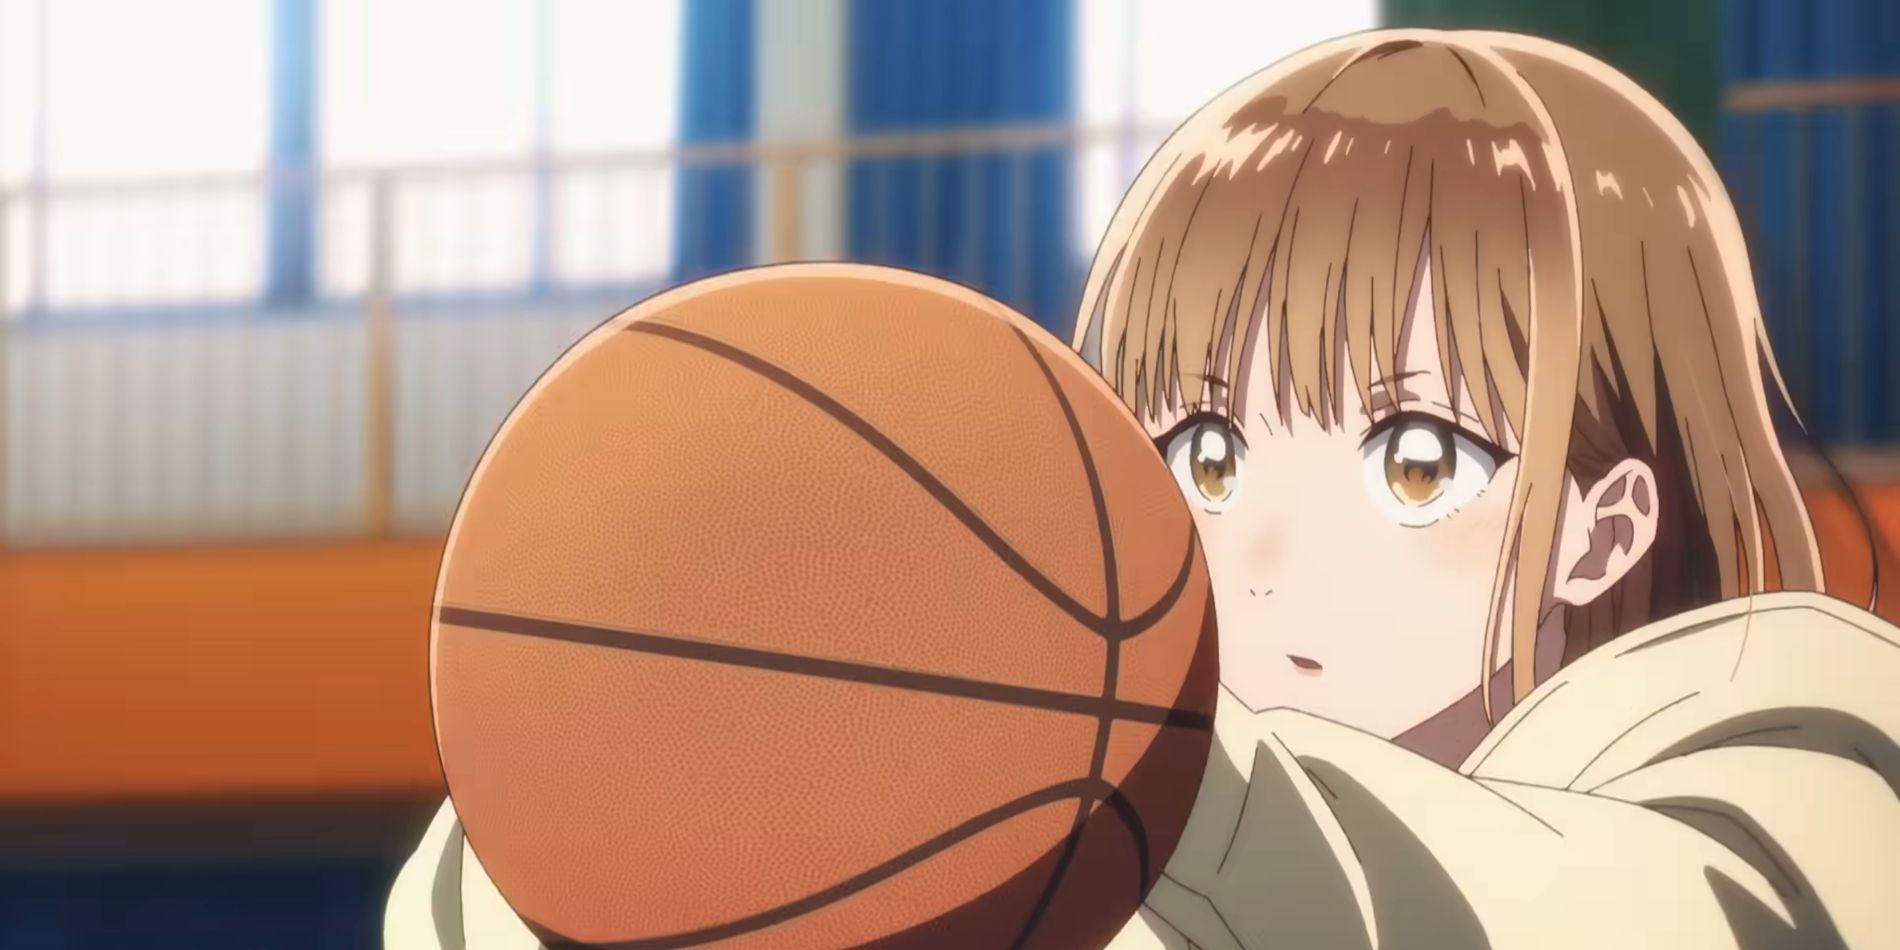 Blue Box Shonen Jump Anime Chinatsu playing basketball